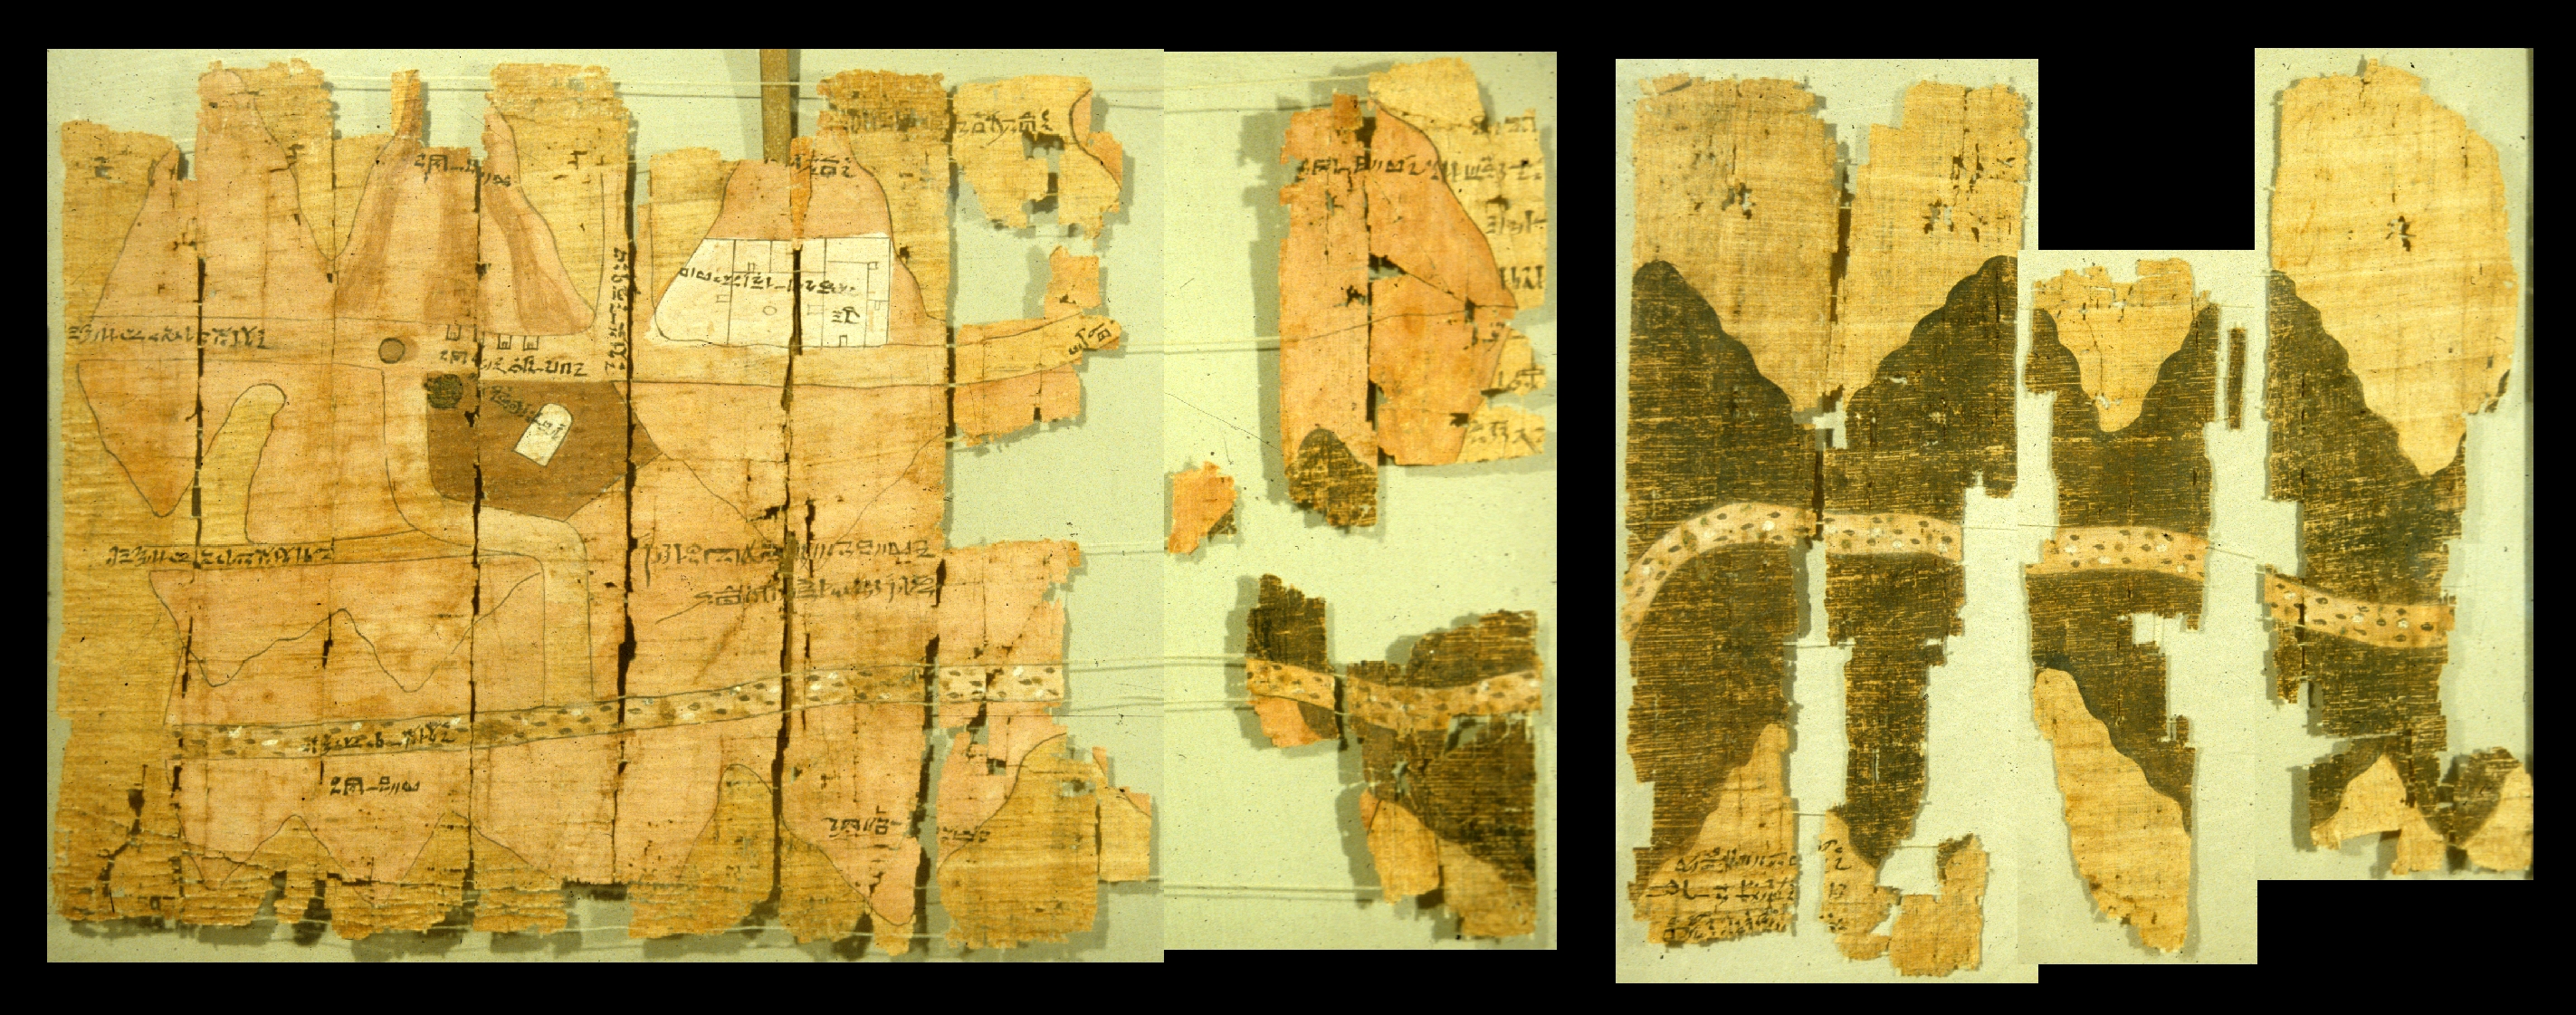 上图：主前1150年左右的古埃及都灵莎草纸采矿地图（Turin Papyrus Map），描绘了东部沙漠哈马马特旱溪（Wadi Hammamat）的矿场位置和地形，被认为是最古老的地图。